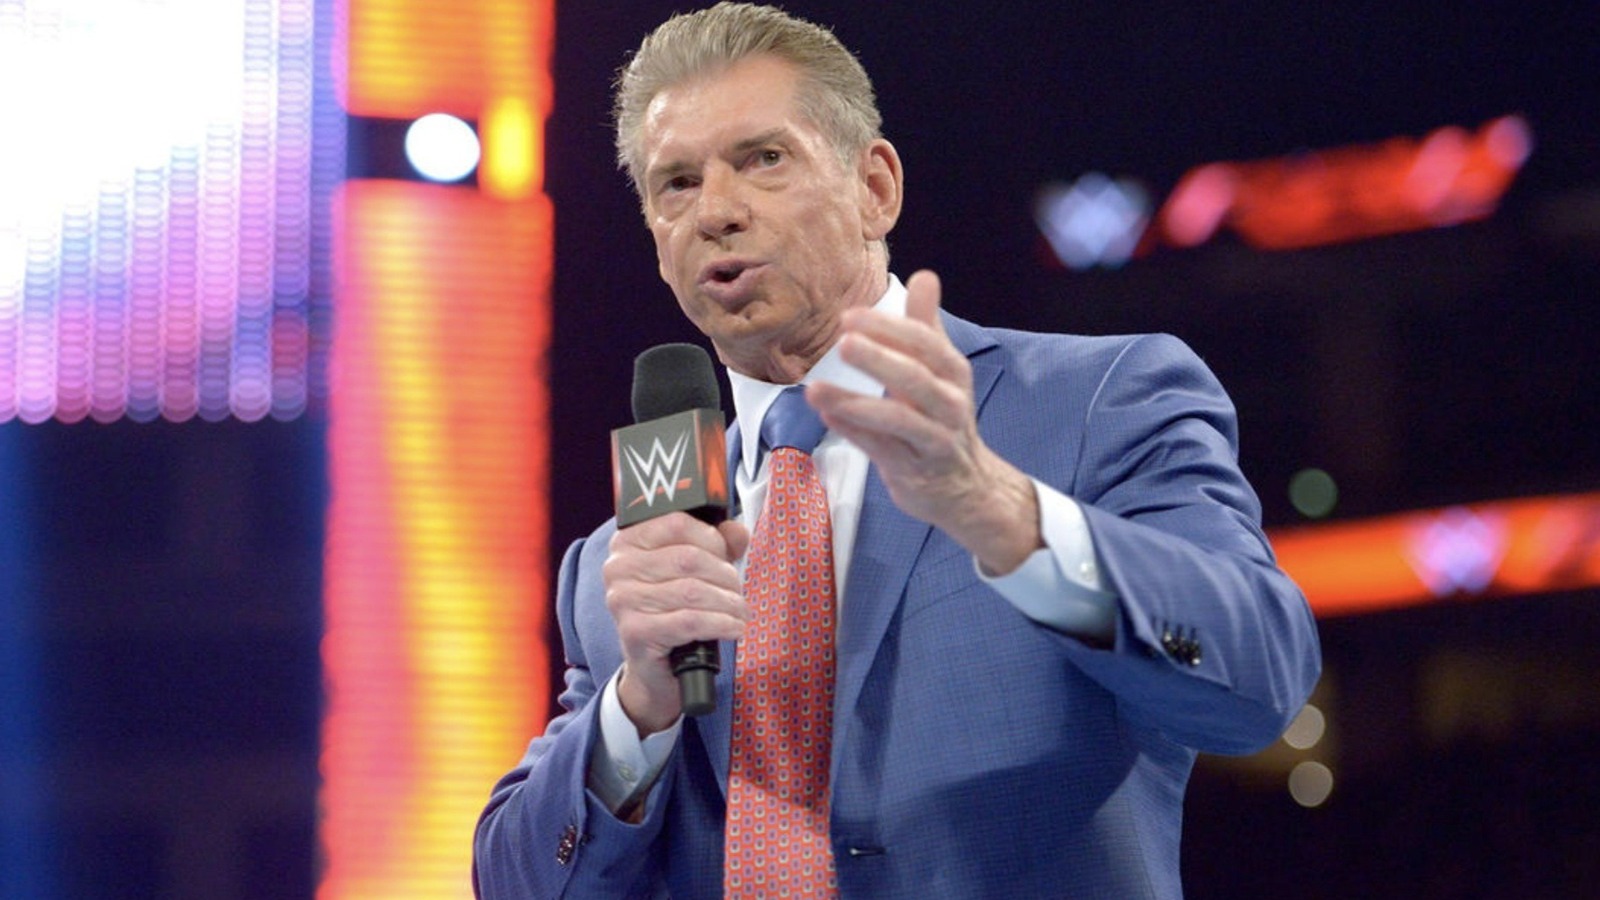 WWE elimina la página de perfil de Vince McMahon del sitio web de la empresa tras su renuncia